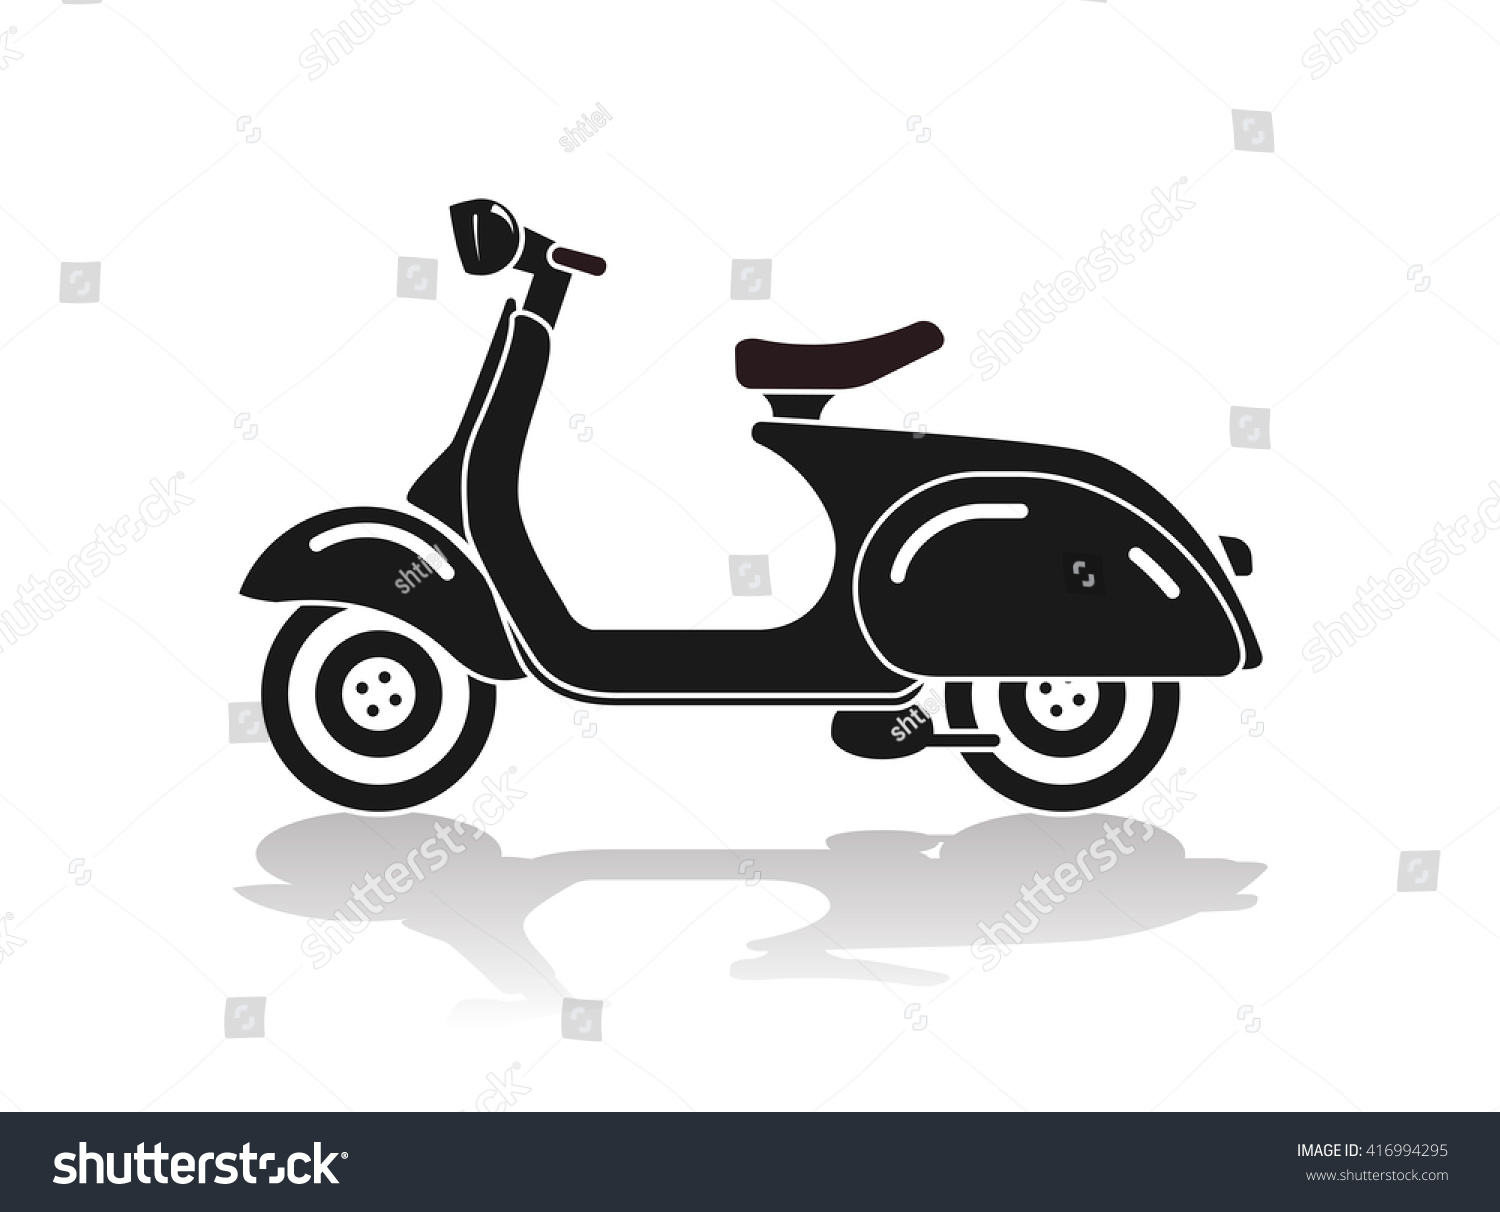 バイク用スクーター黒シルエットバイクアイコンベクターイラスト のベクター画像素材 ロイヤリティフリー